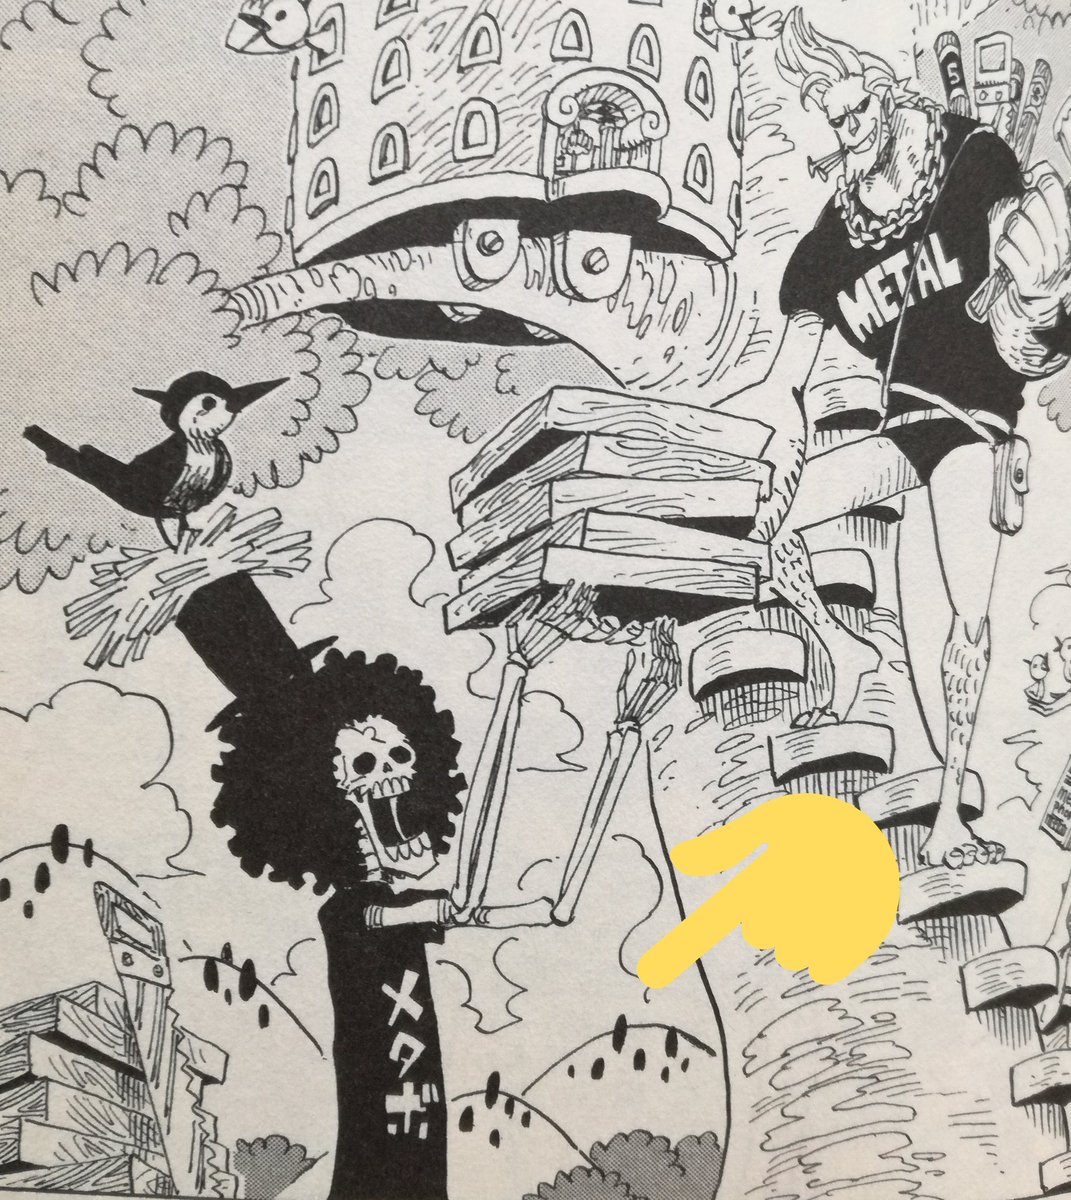 One Pieceが大好きな神木 スーパーカミキカンデ Sur Twitter 第576話 59巻 の扉絵で描かれた山はホールケーキアイランドの山に似てますよねー T Co Mfnew81jsk Twitter